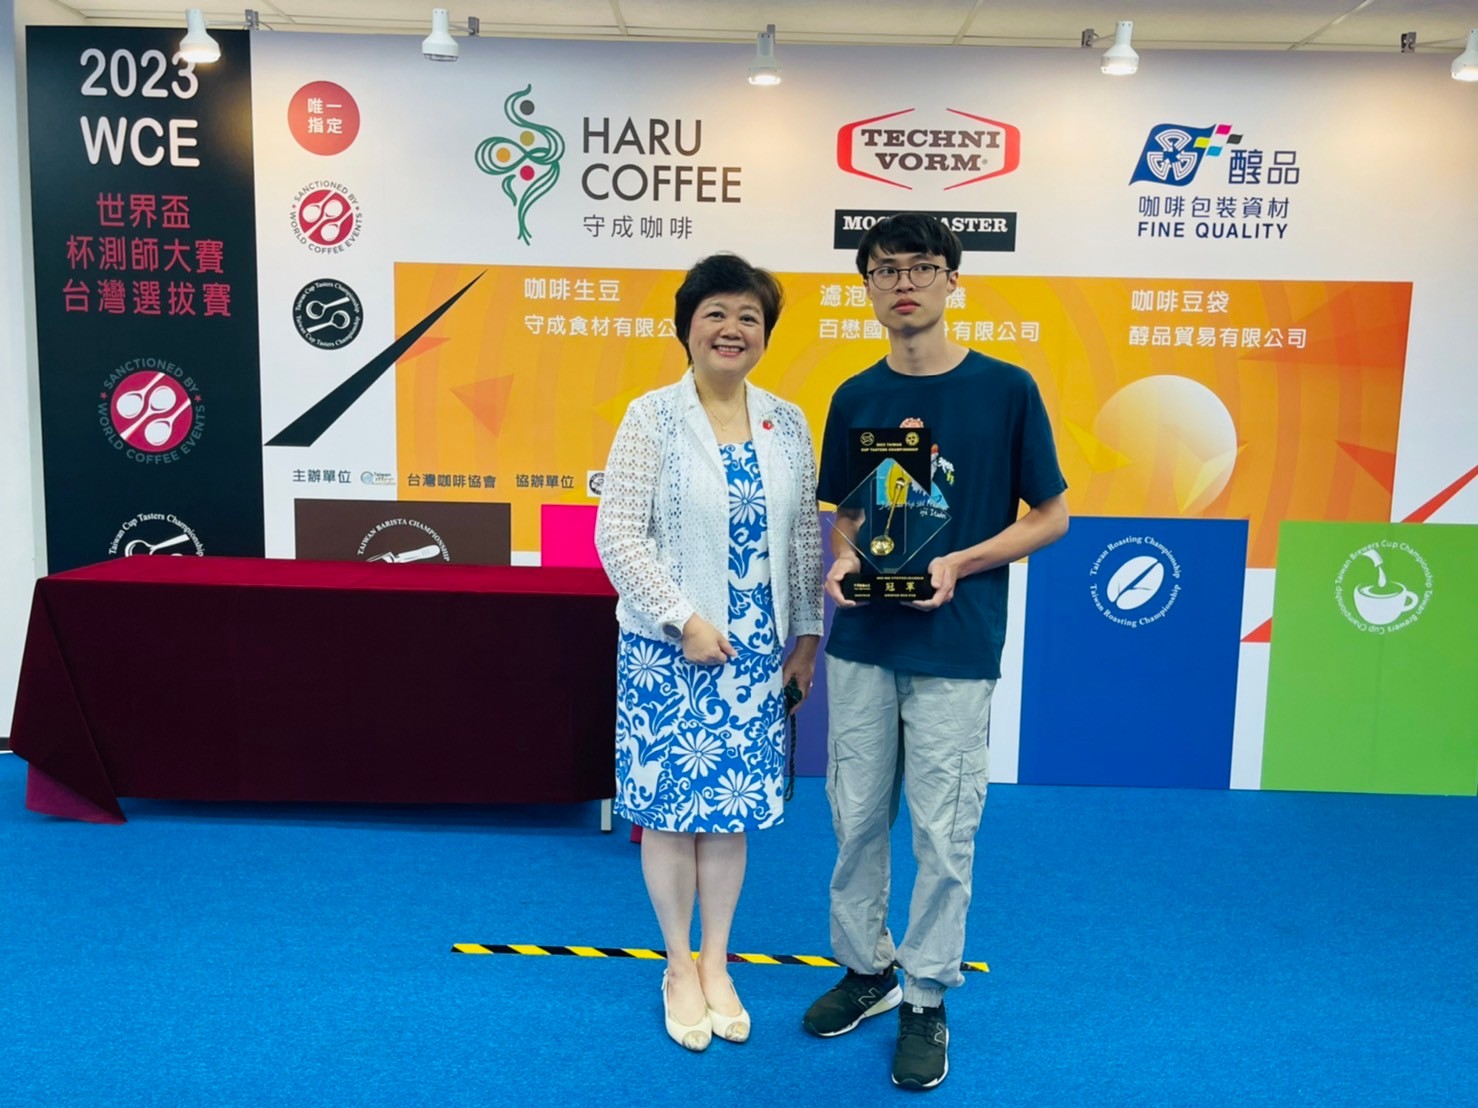 史上最年輕 崑大餐飲系賴力弘奪「WCE世界盃杯測師大賽」台灣冠軍